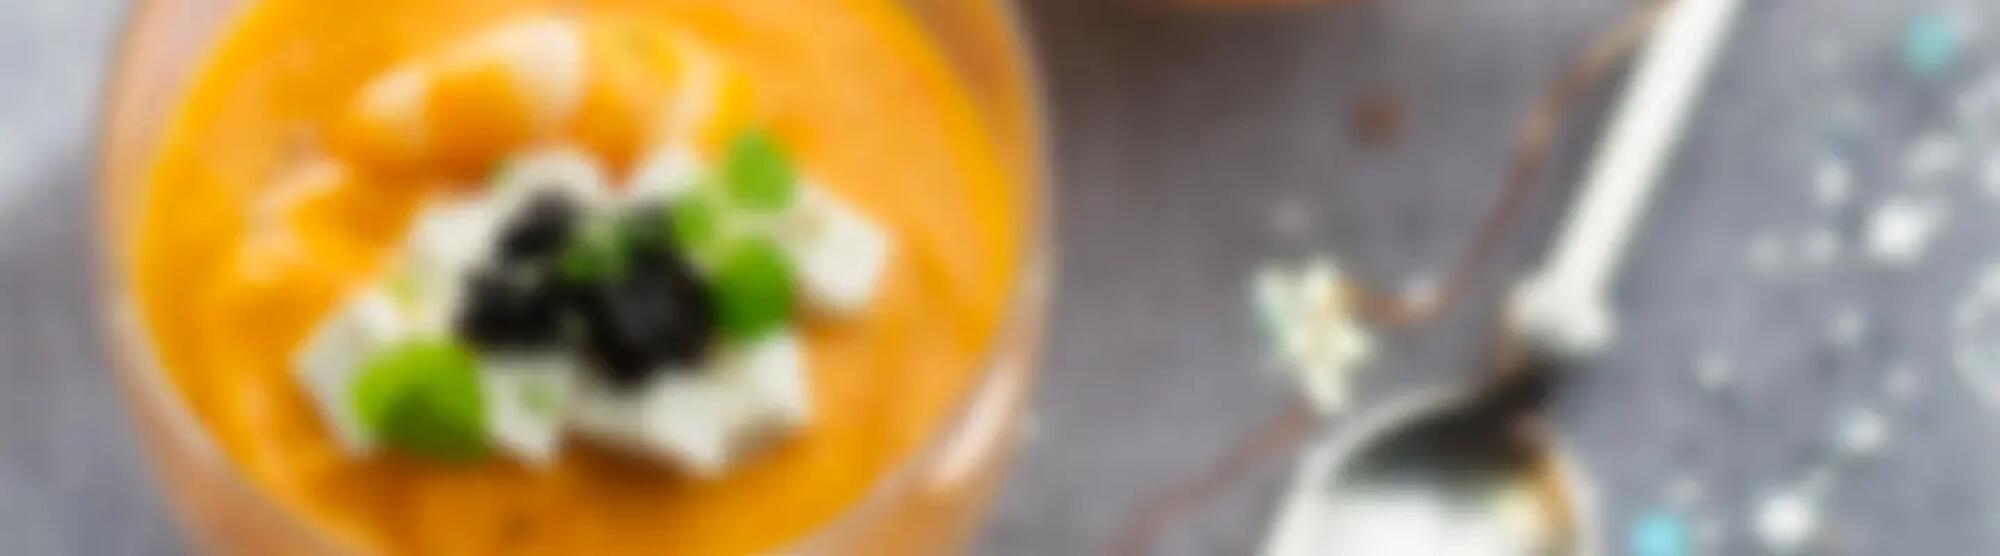 Recette : Velouté de langoustines au fromage frais